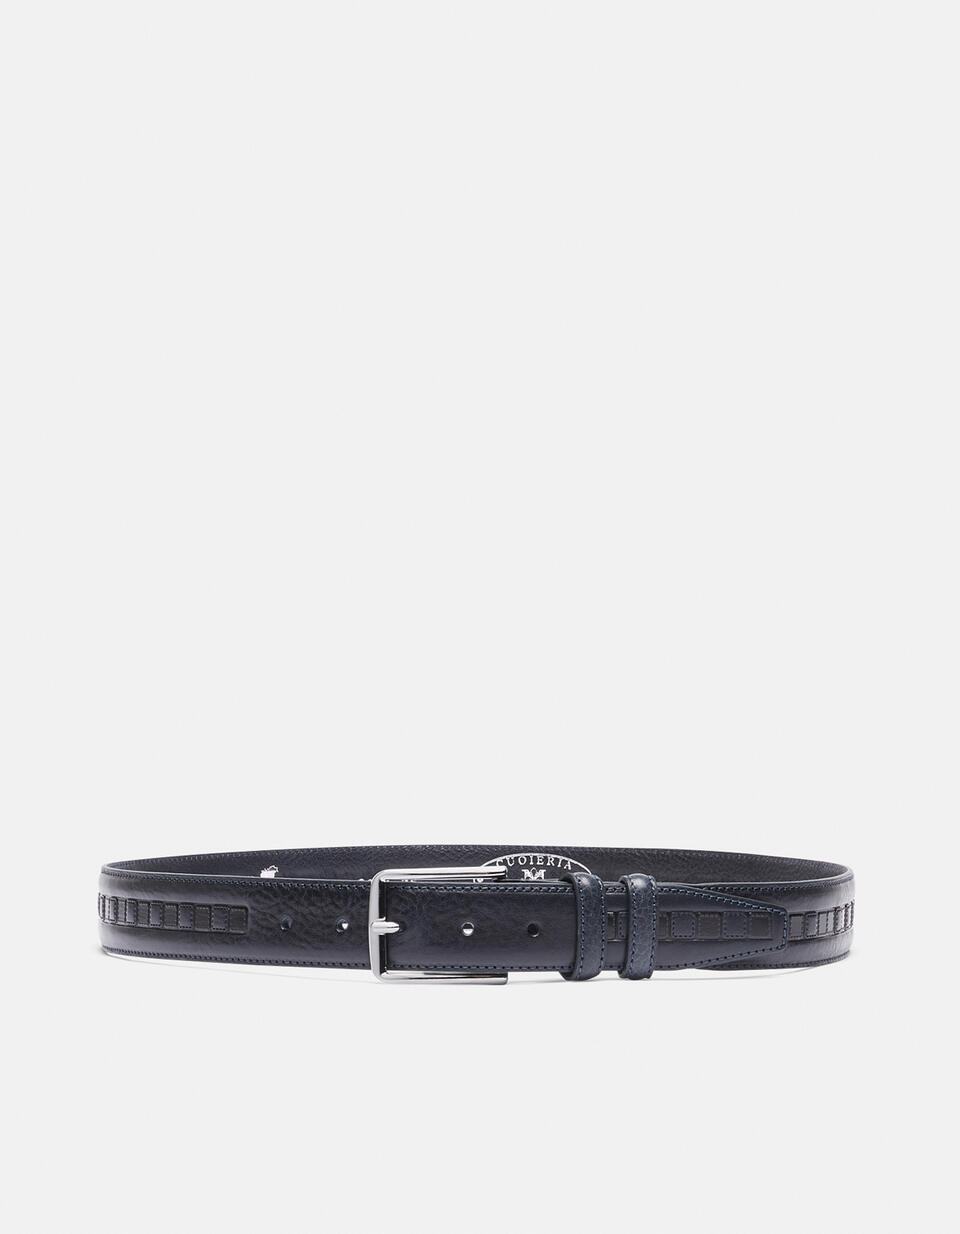 Belt leather working height 3.5 cm. - Men Belts | Belts BLU - Men Belts | BeltsCuoieria Fiorentina